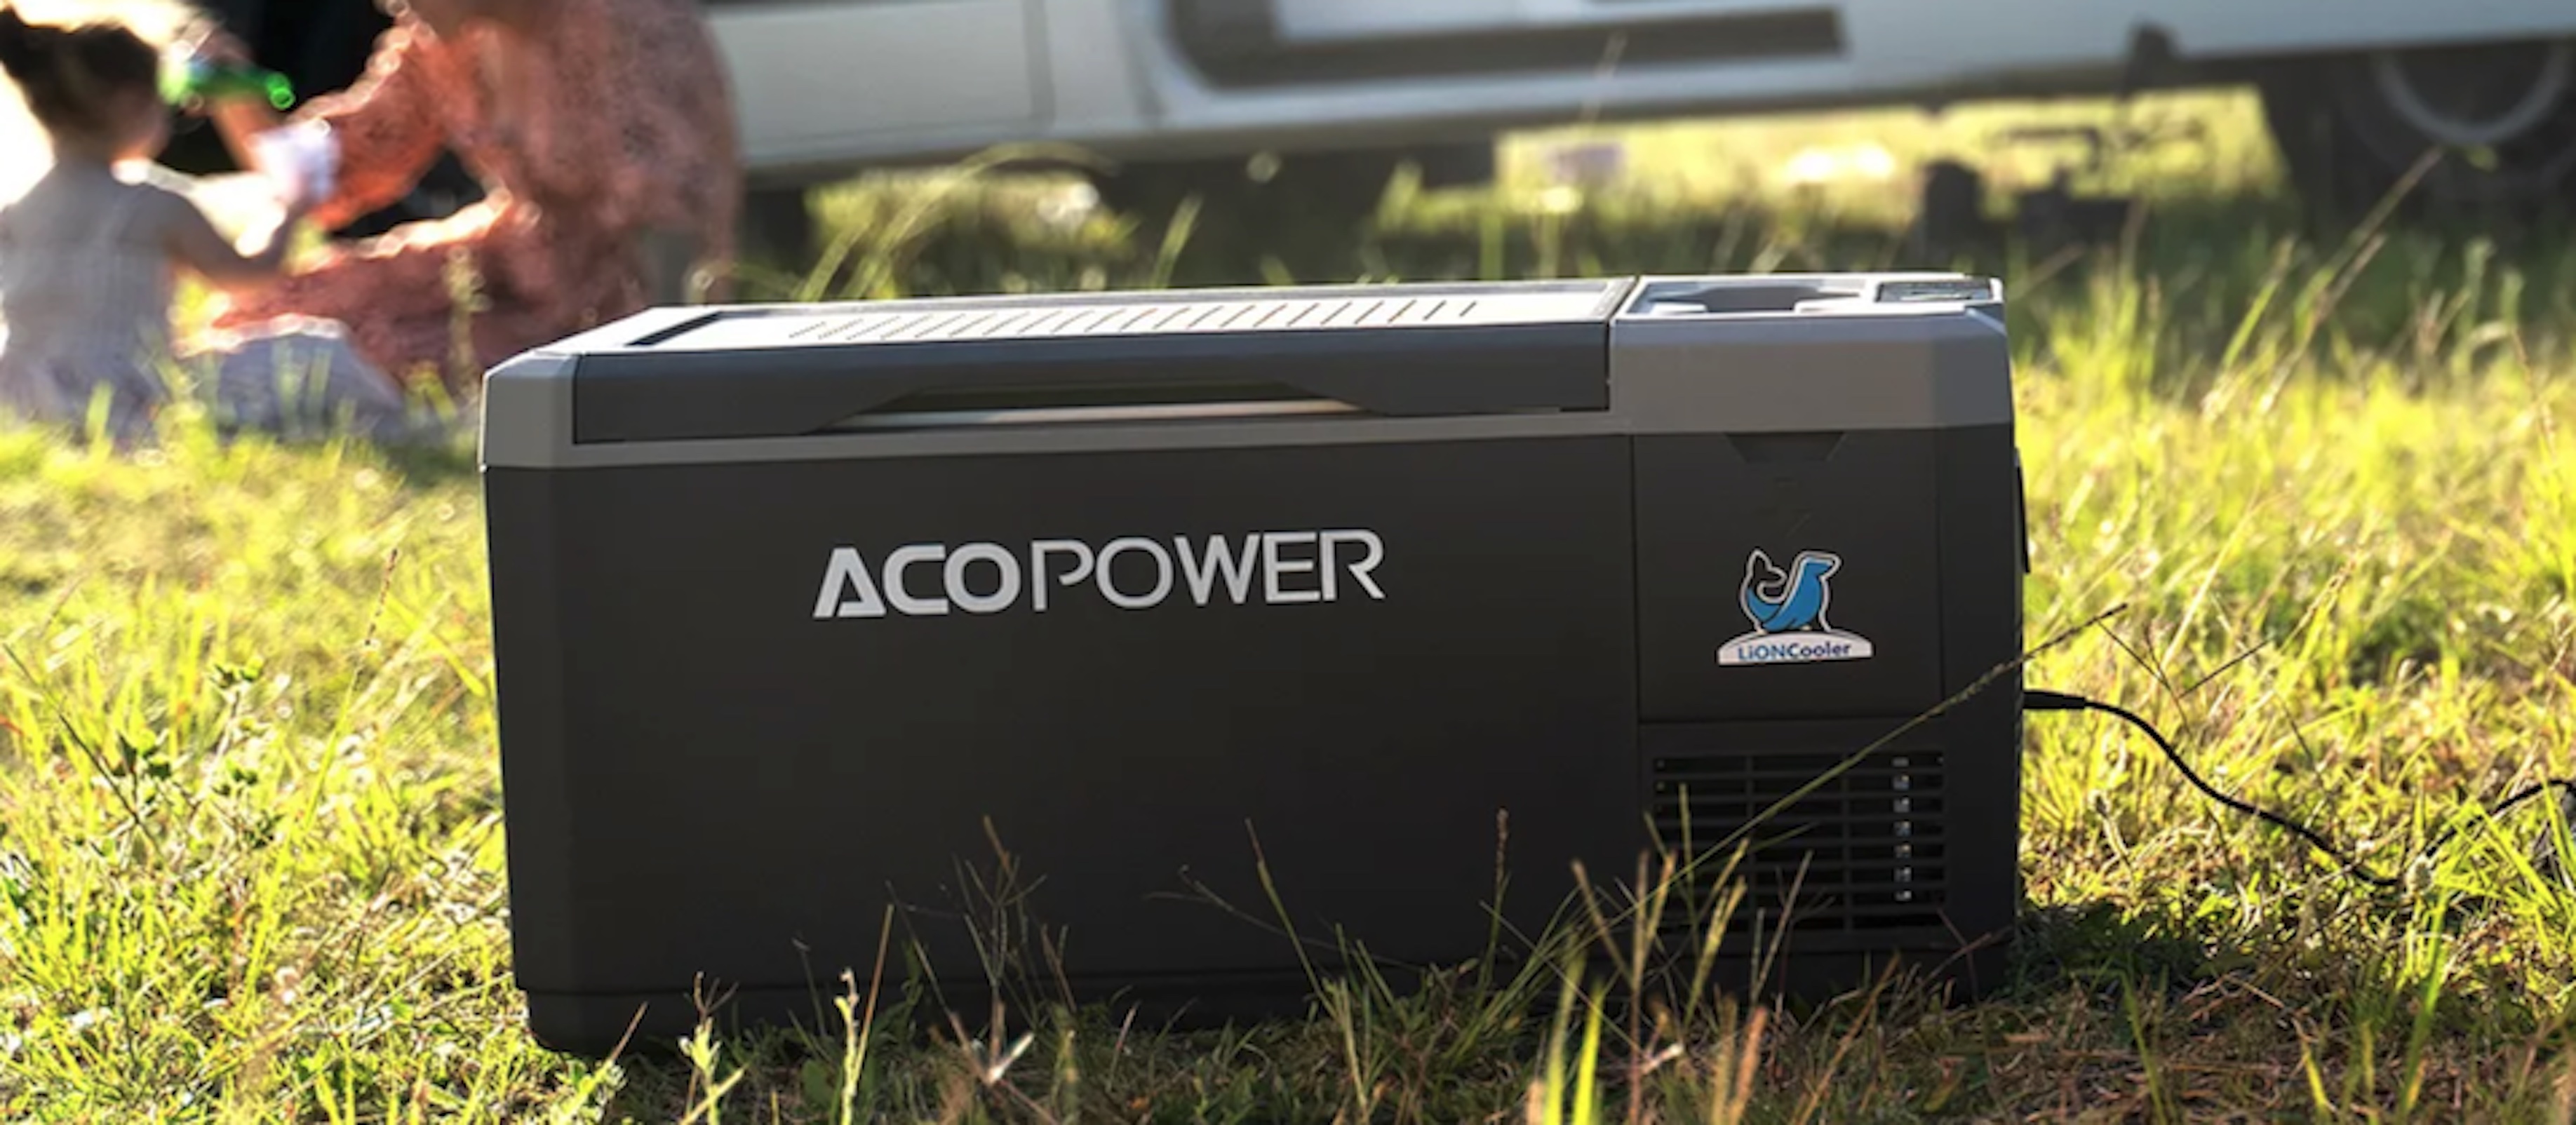 Acopower LiONCooler Mini 28L